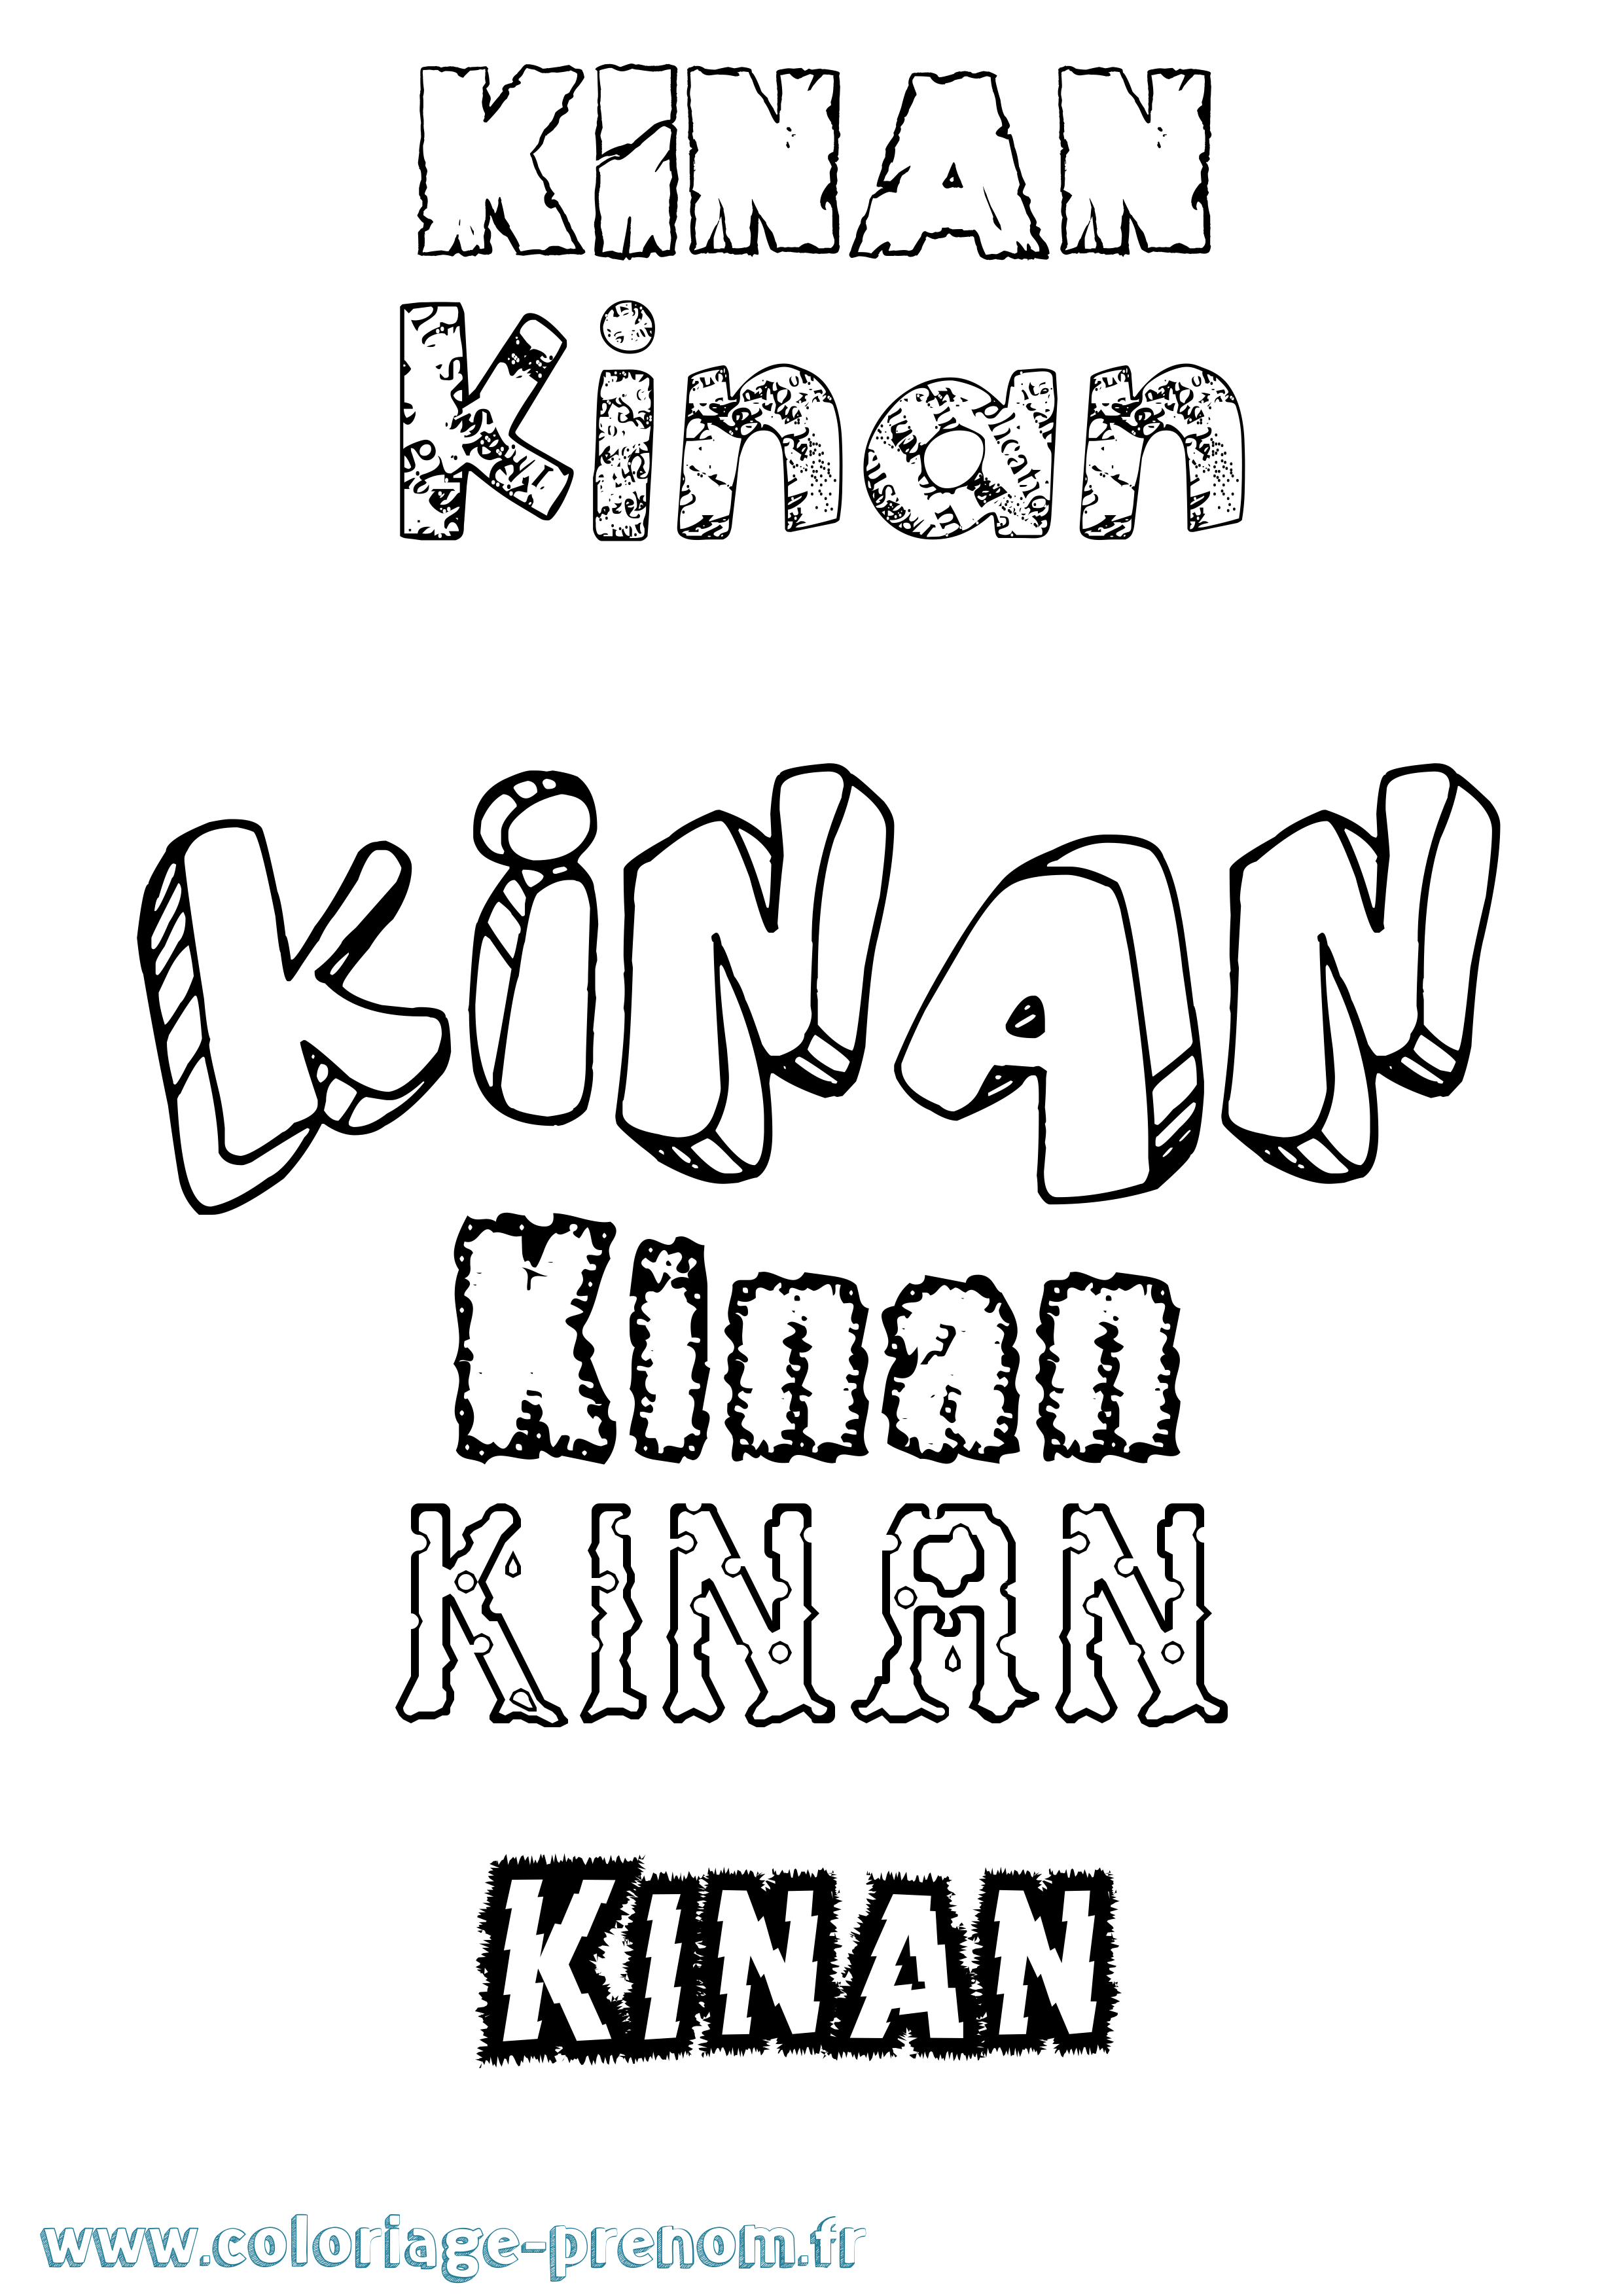 Coloriage prénom Kinan Destructuré